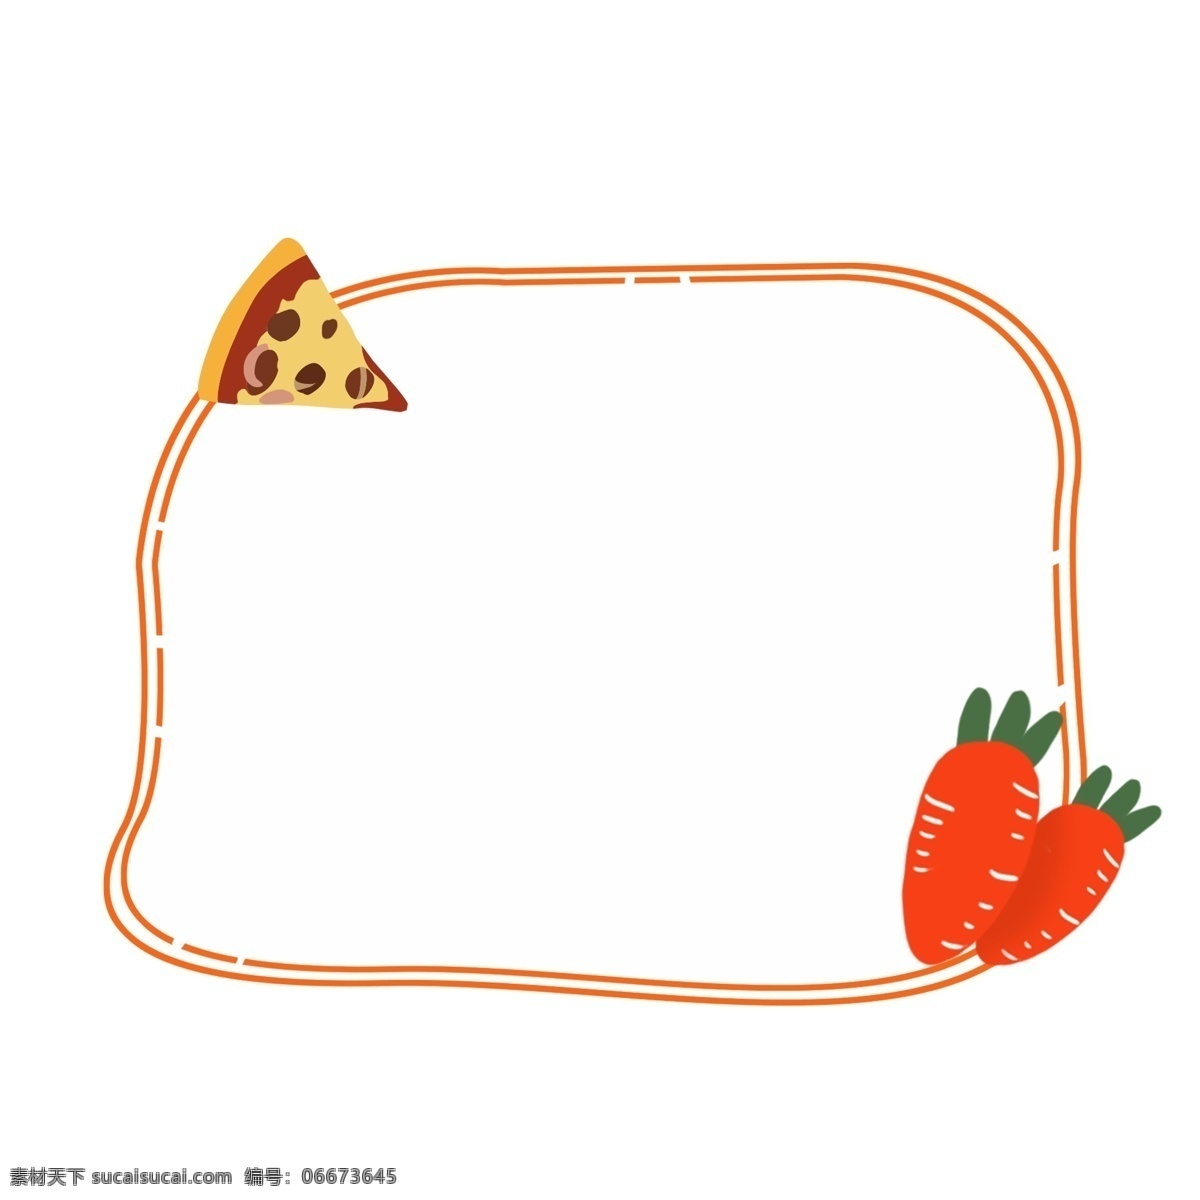 卡通 食物 边框 设计素材 对话框 卡通边框 矢量边框 手绘边框 胡萝卜 食物边框 清新边框 披萨 手绘